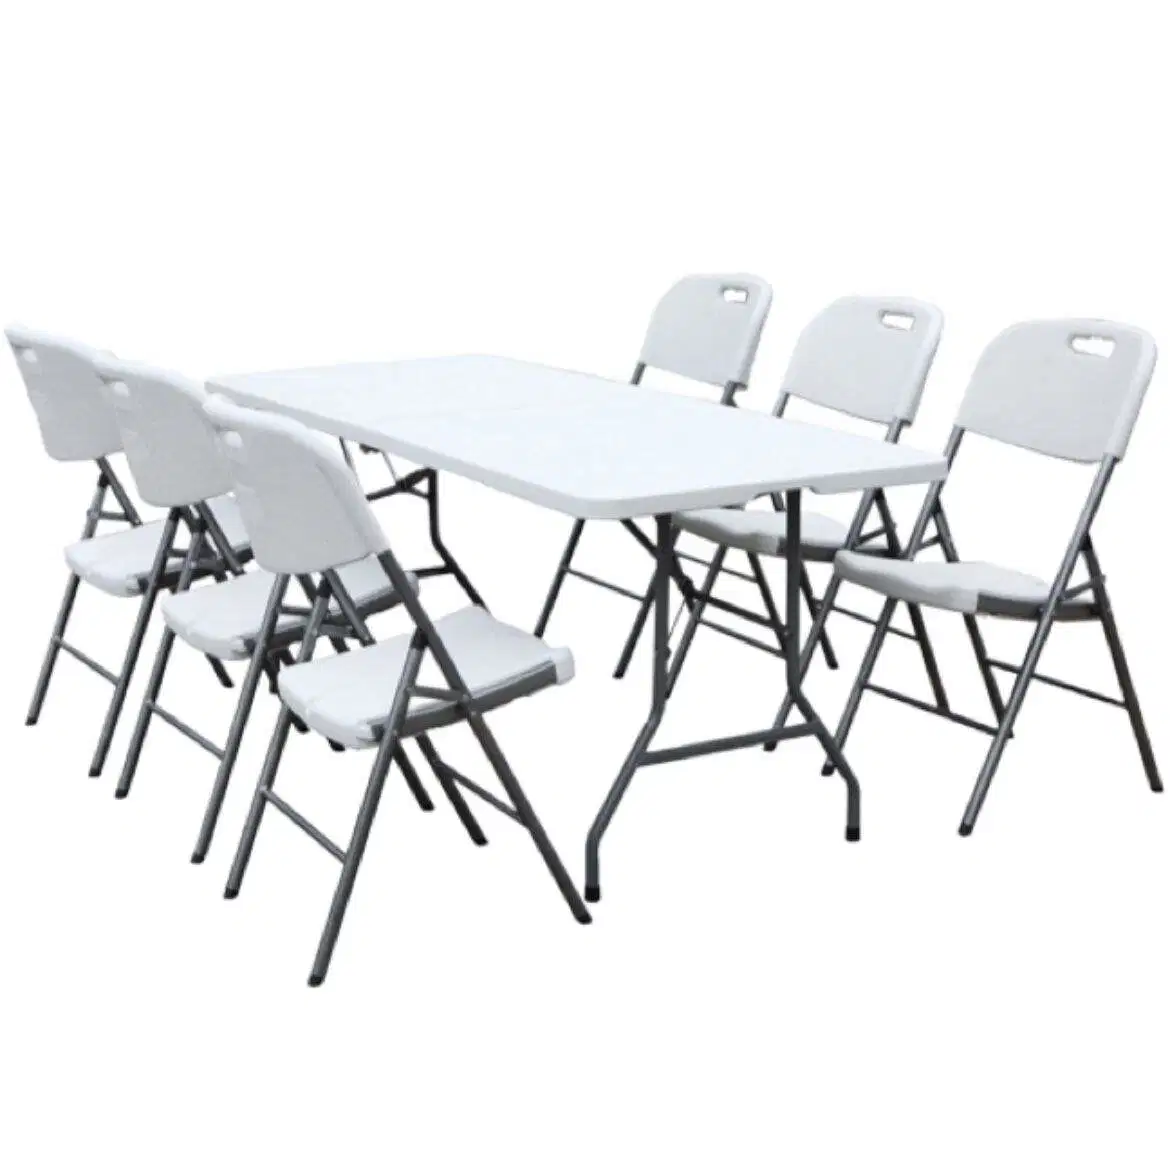 6 FT Table de jardin extérieure rectangulaire portable en plastique Tables et chaises de jardin extérieures.